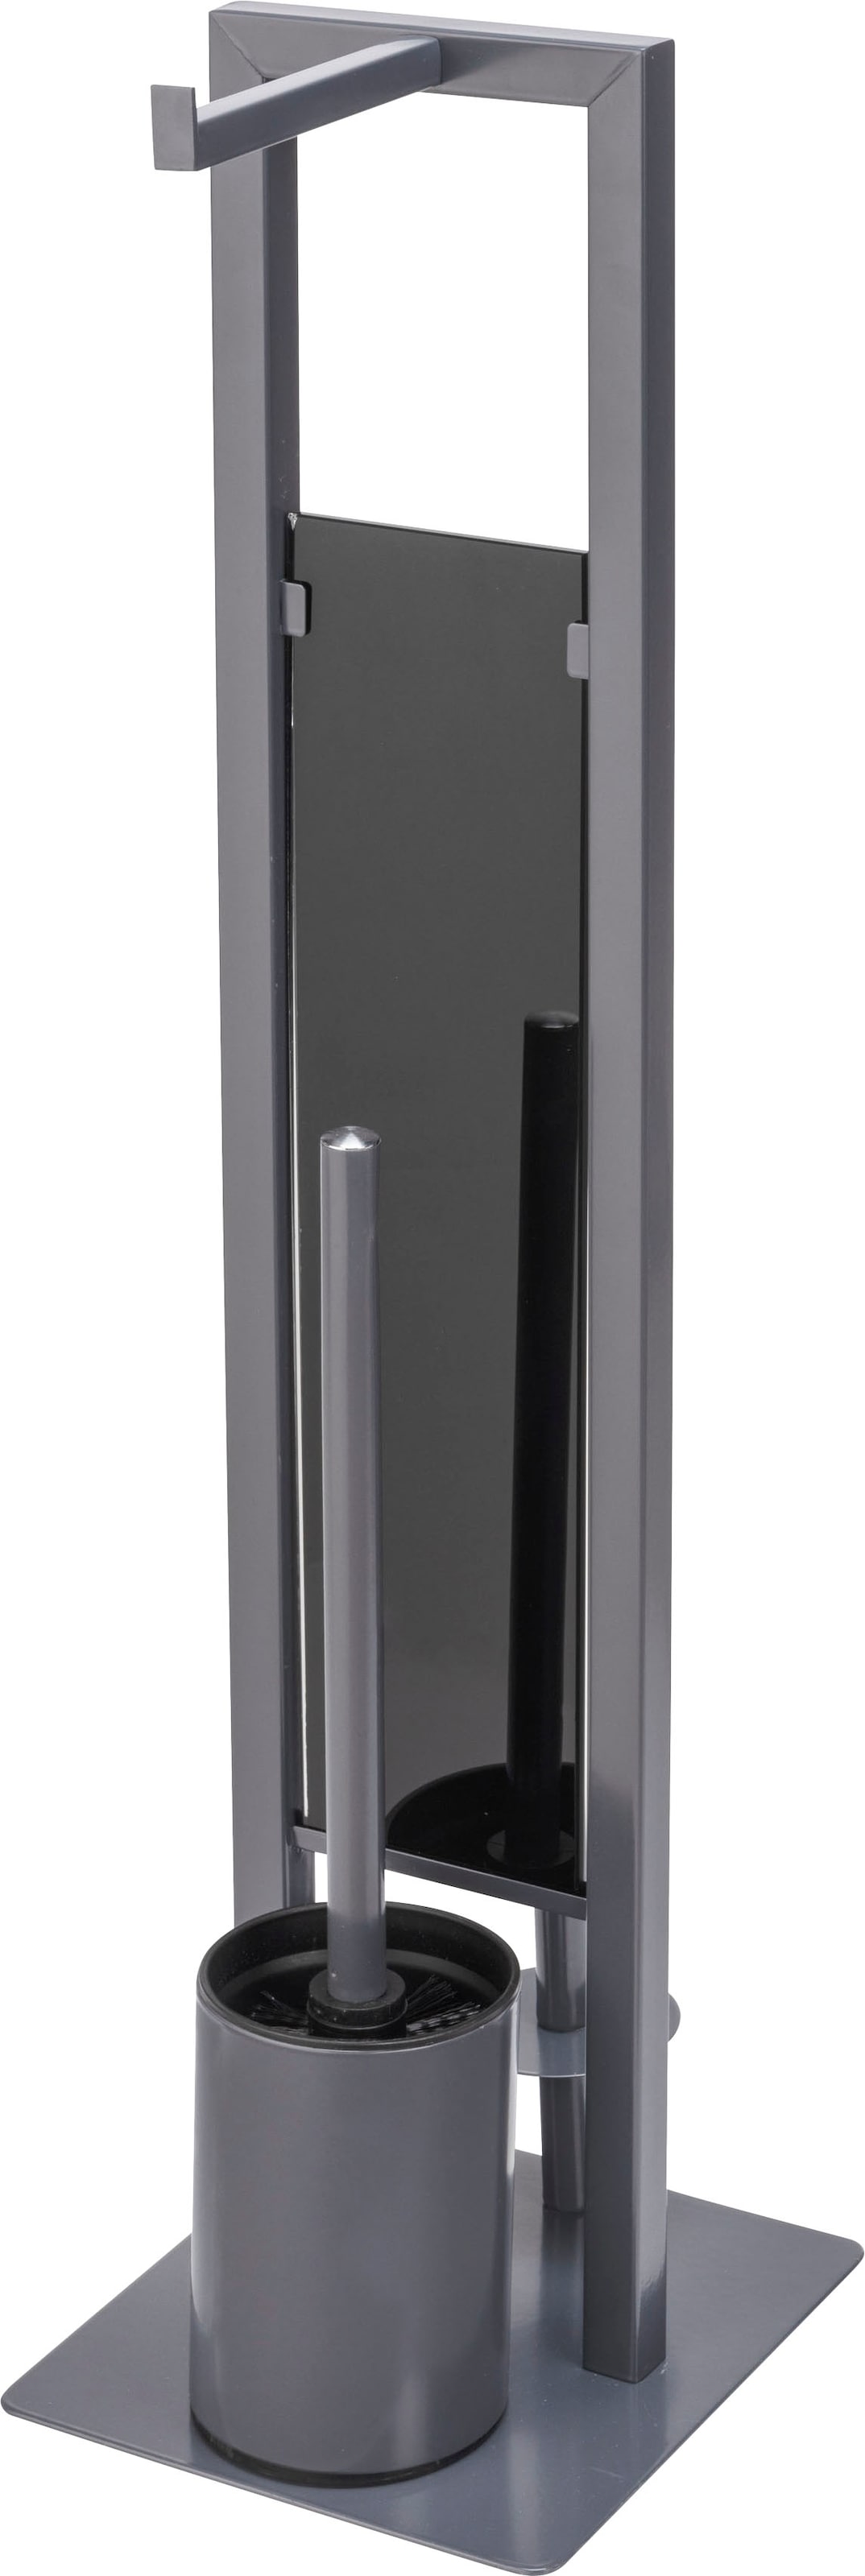 WENKO WC-Garnitur "Rivalta", aus Stahl-Glas-Polypropylen, grau, Platte aus Sicherheitsglas